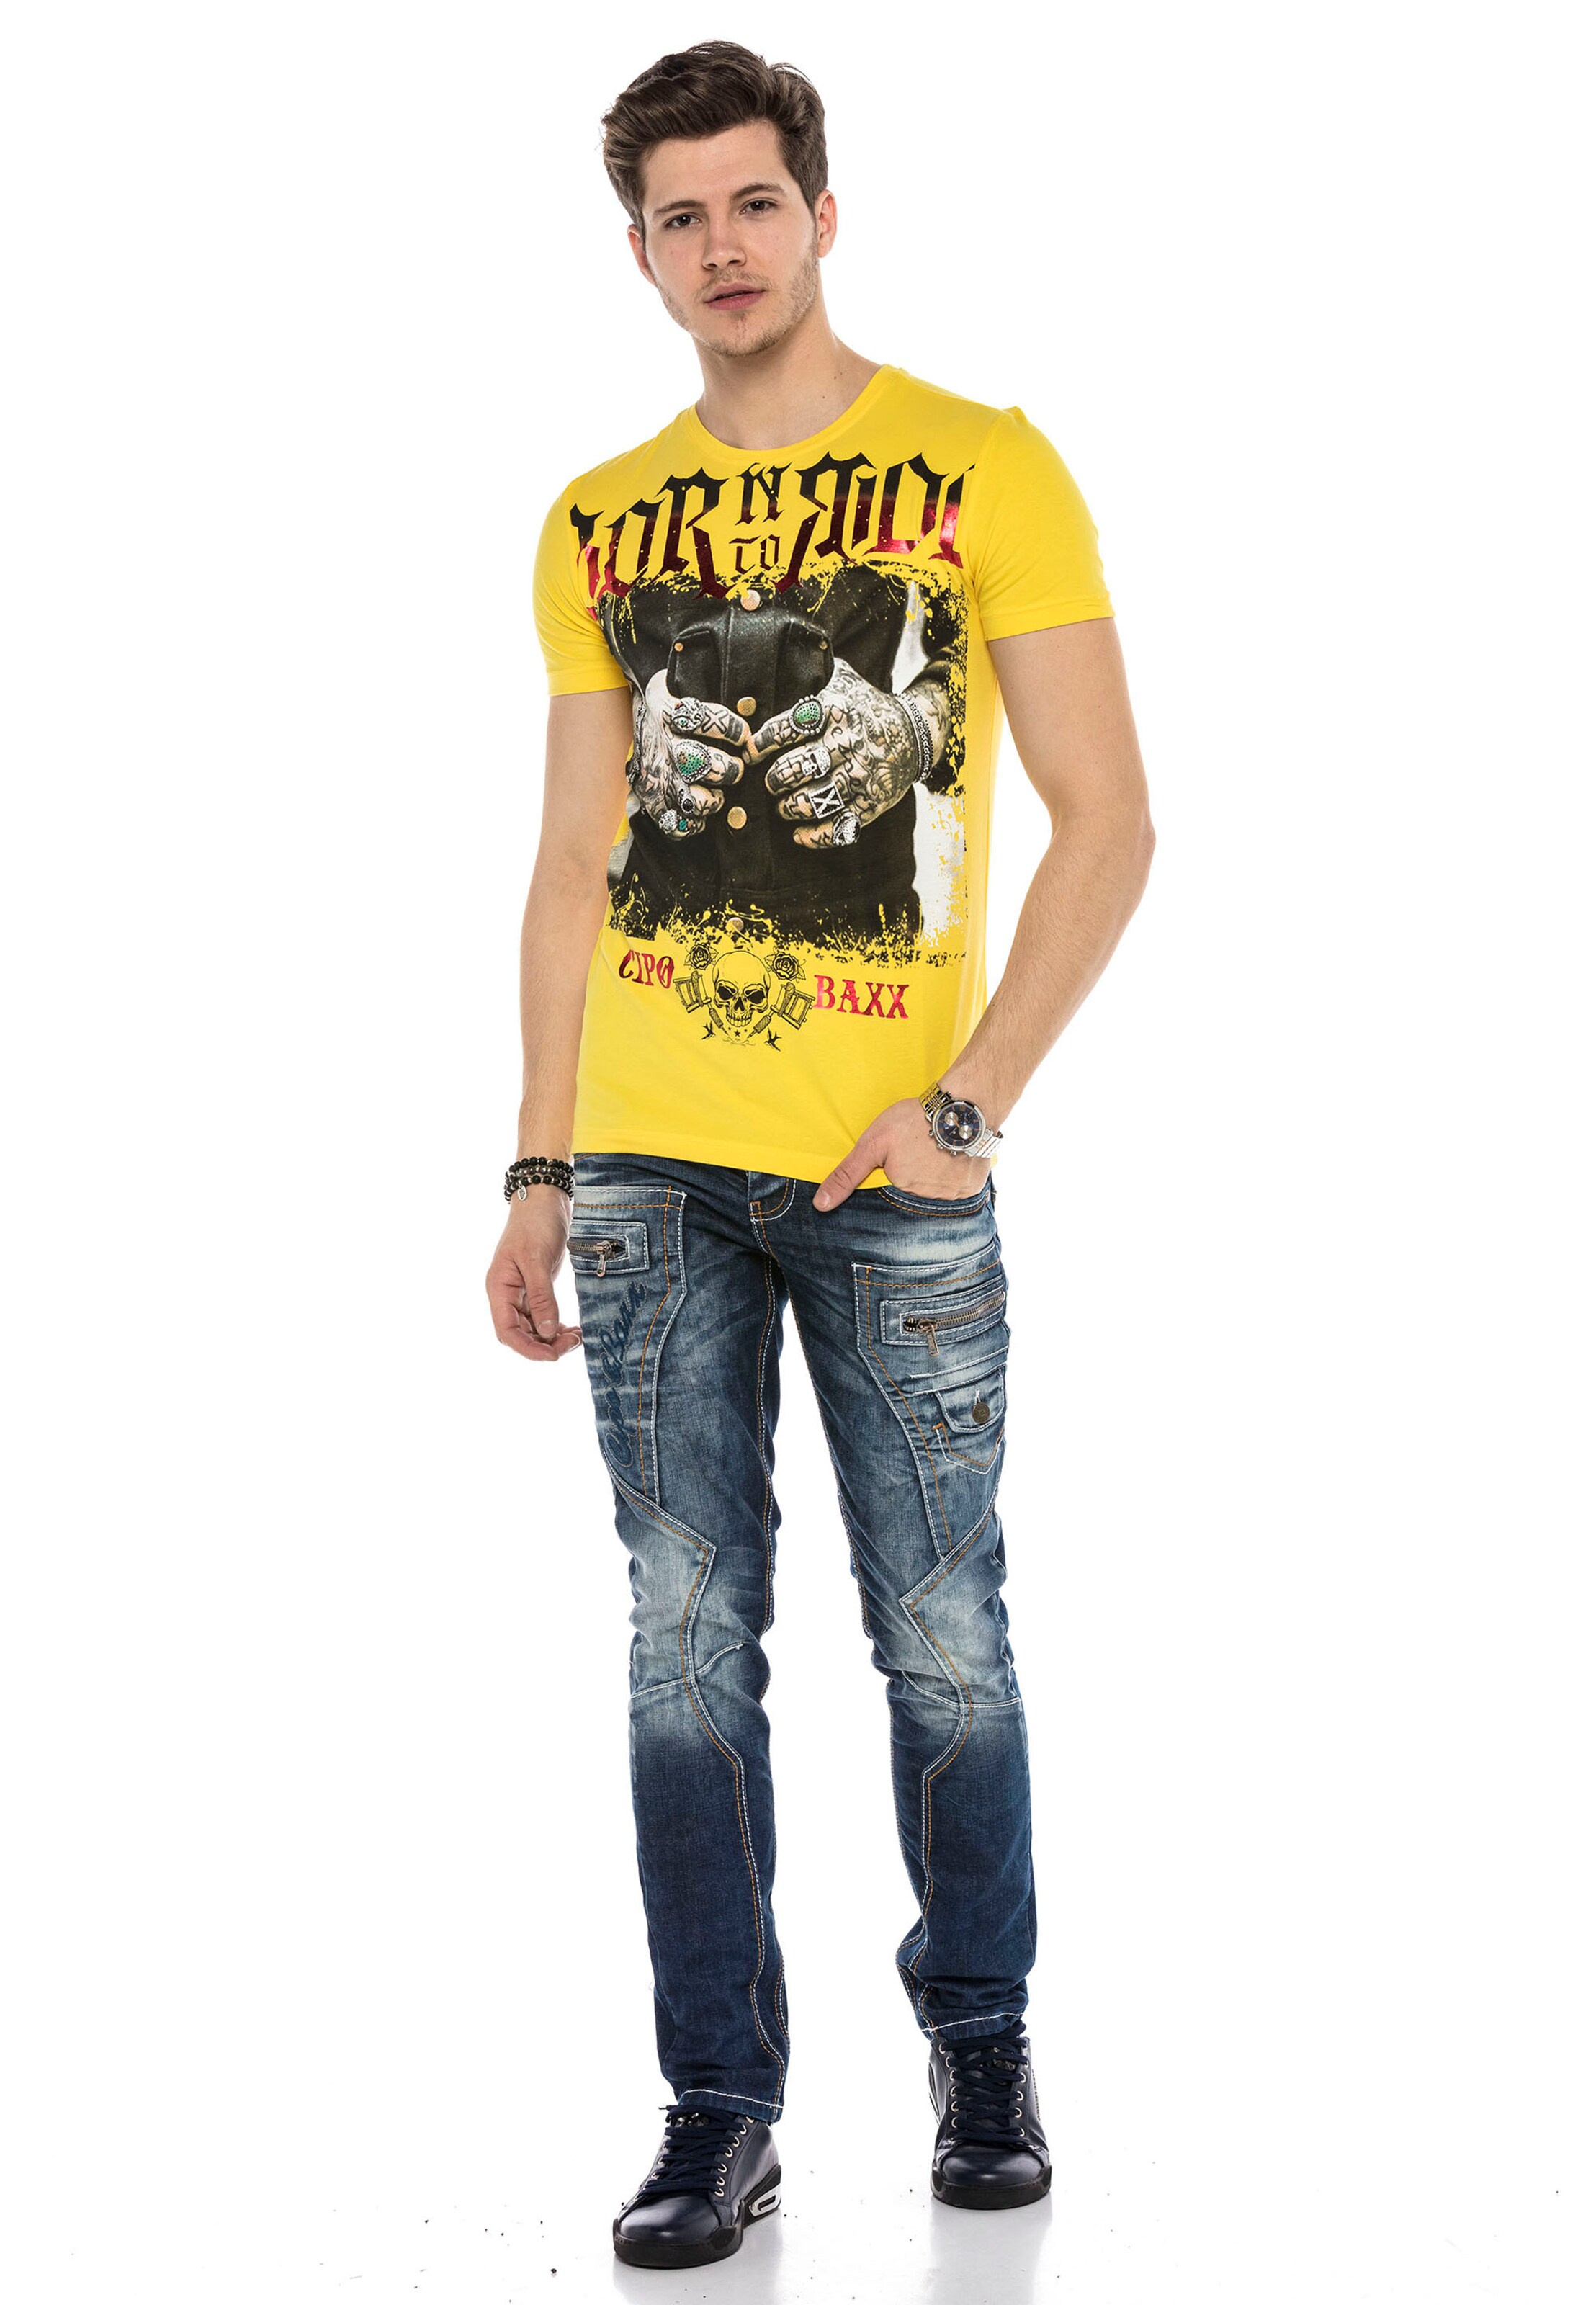 Männer Shirts CIPO & BAXX T-Shirt TOUGH RIDER mit grafischem Print in Gelb - SQ12083